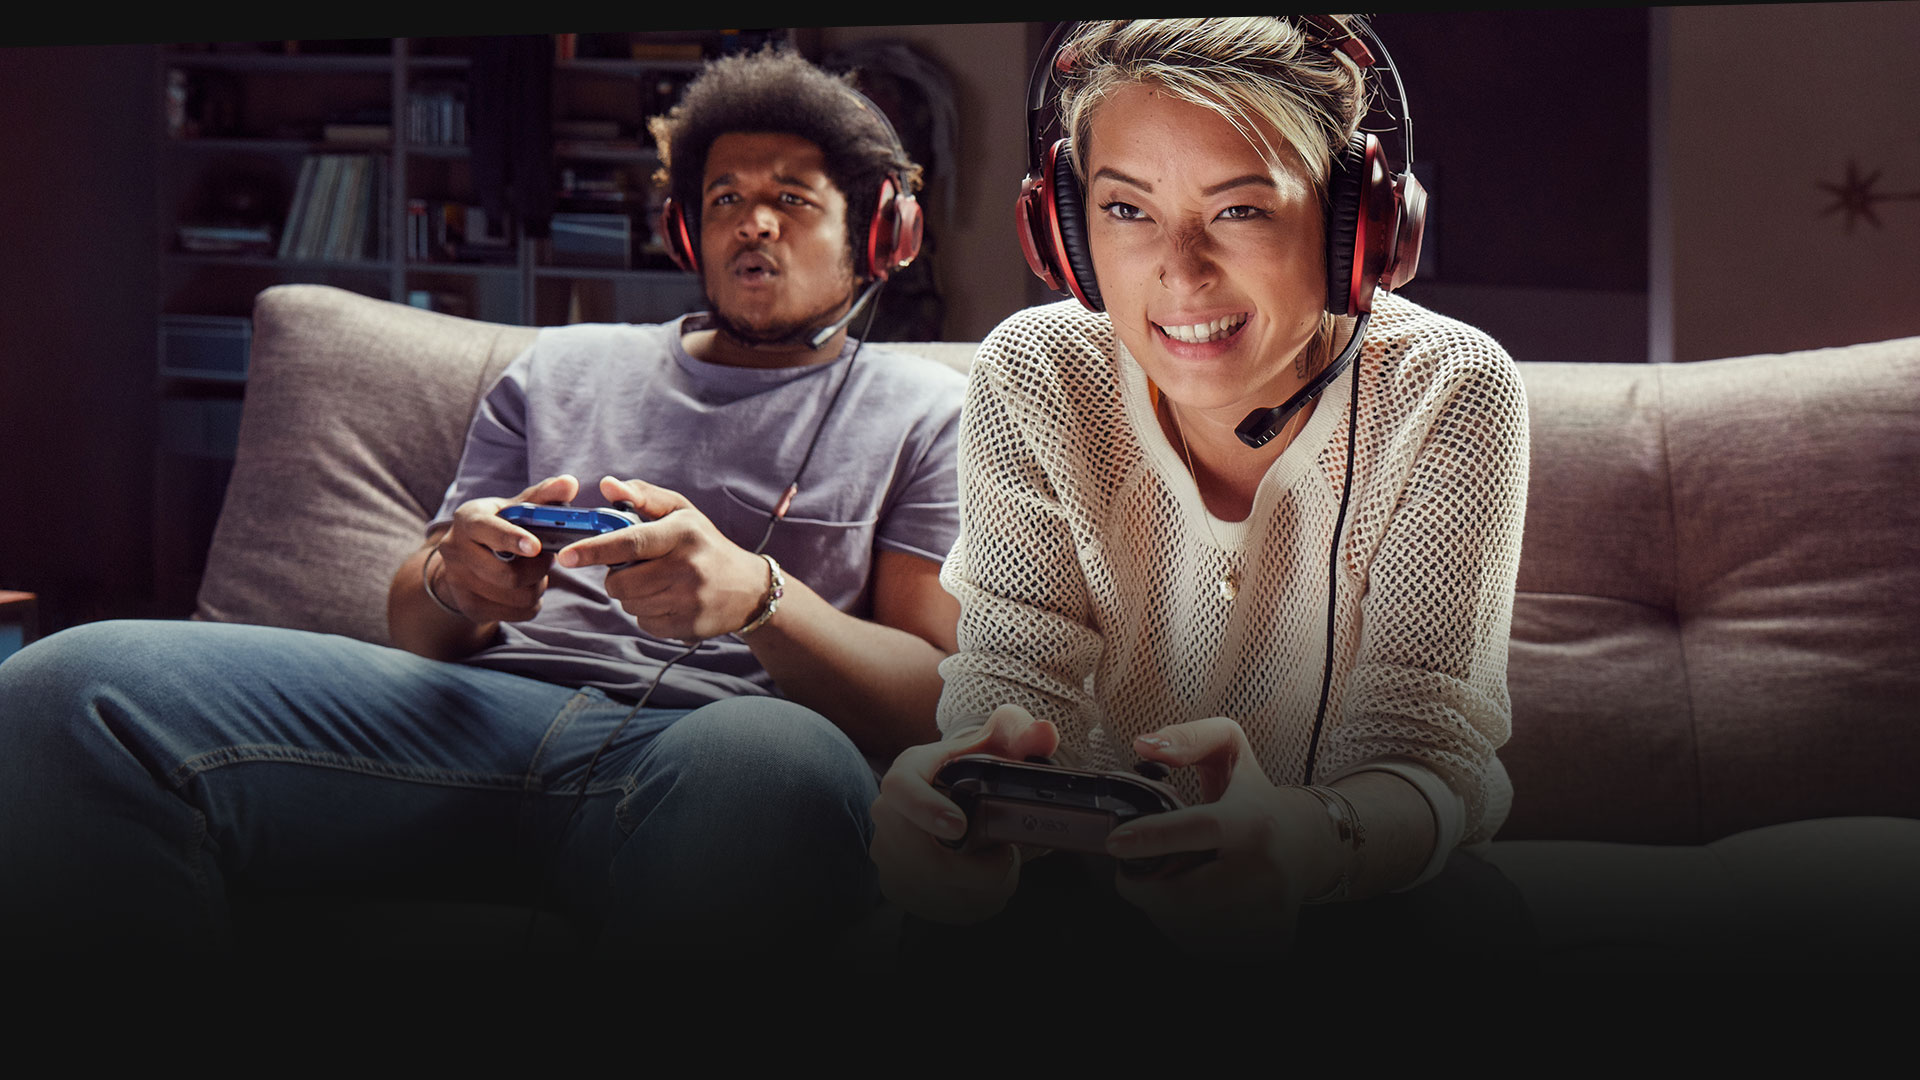 Zwei Personen mit Headsets auf einer Couch, die Xbox One spielen